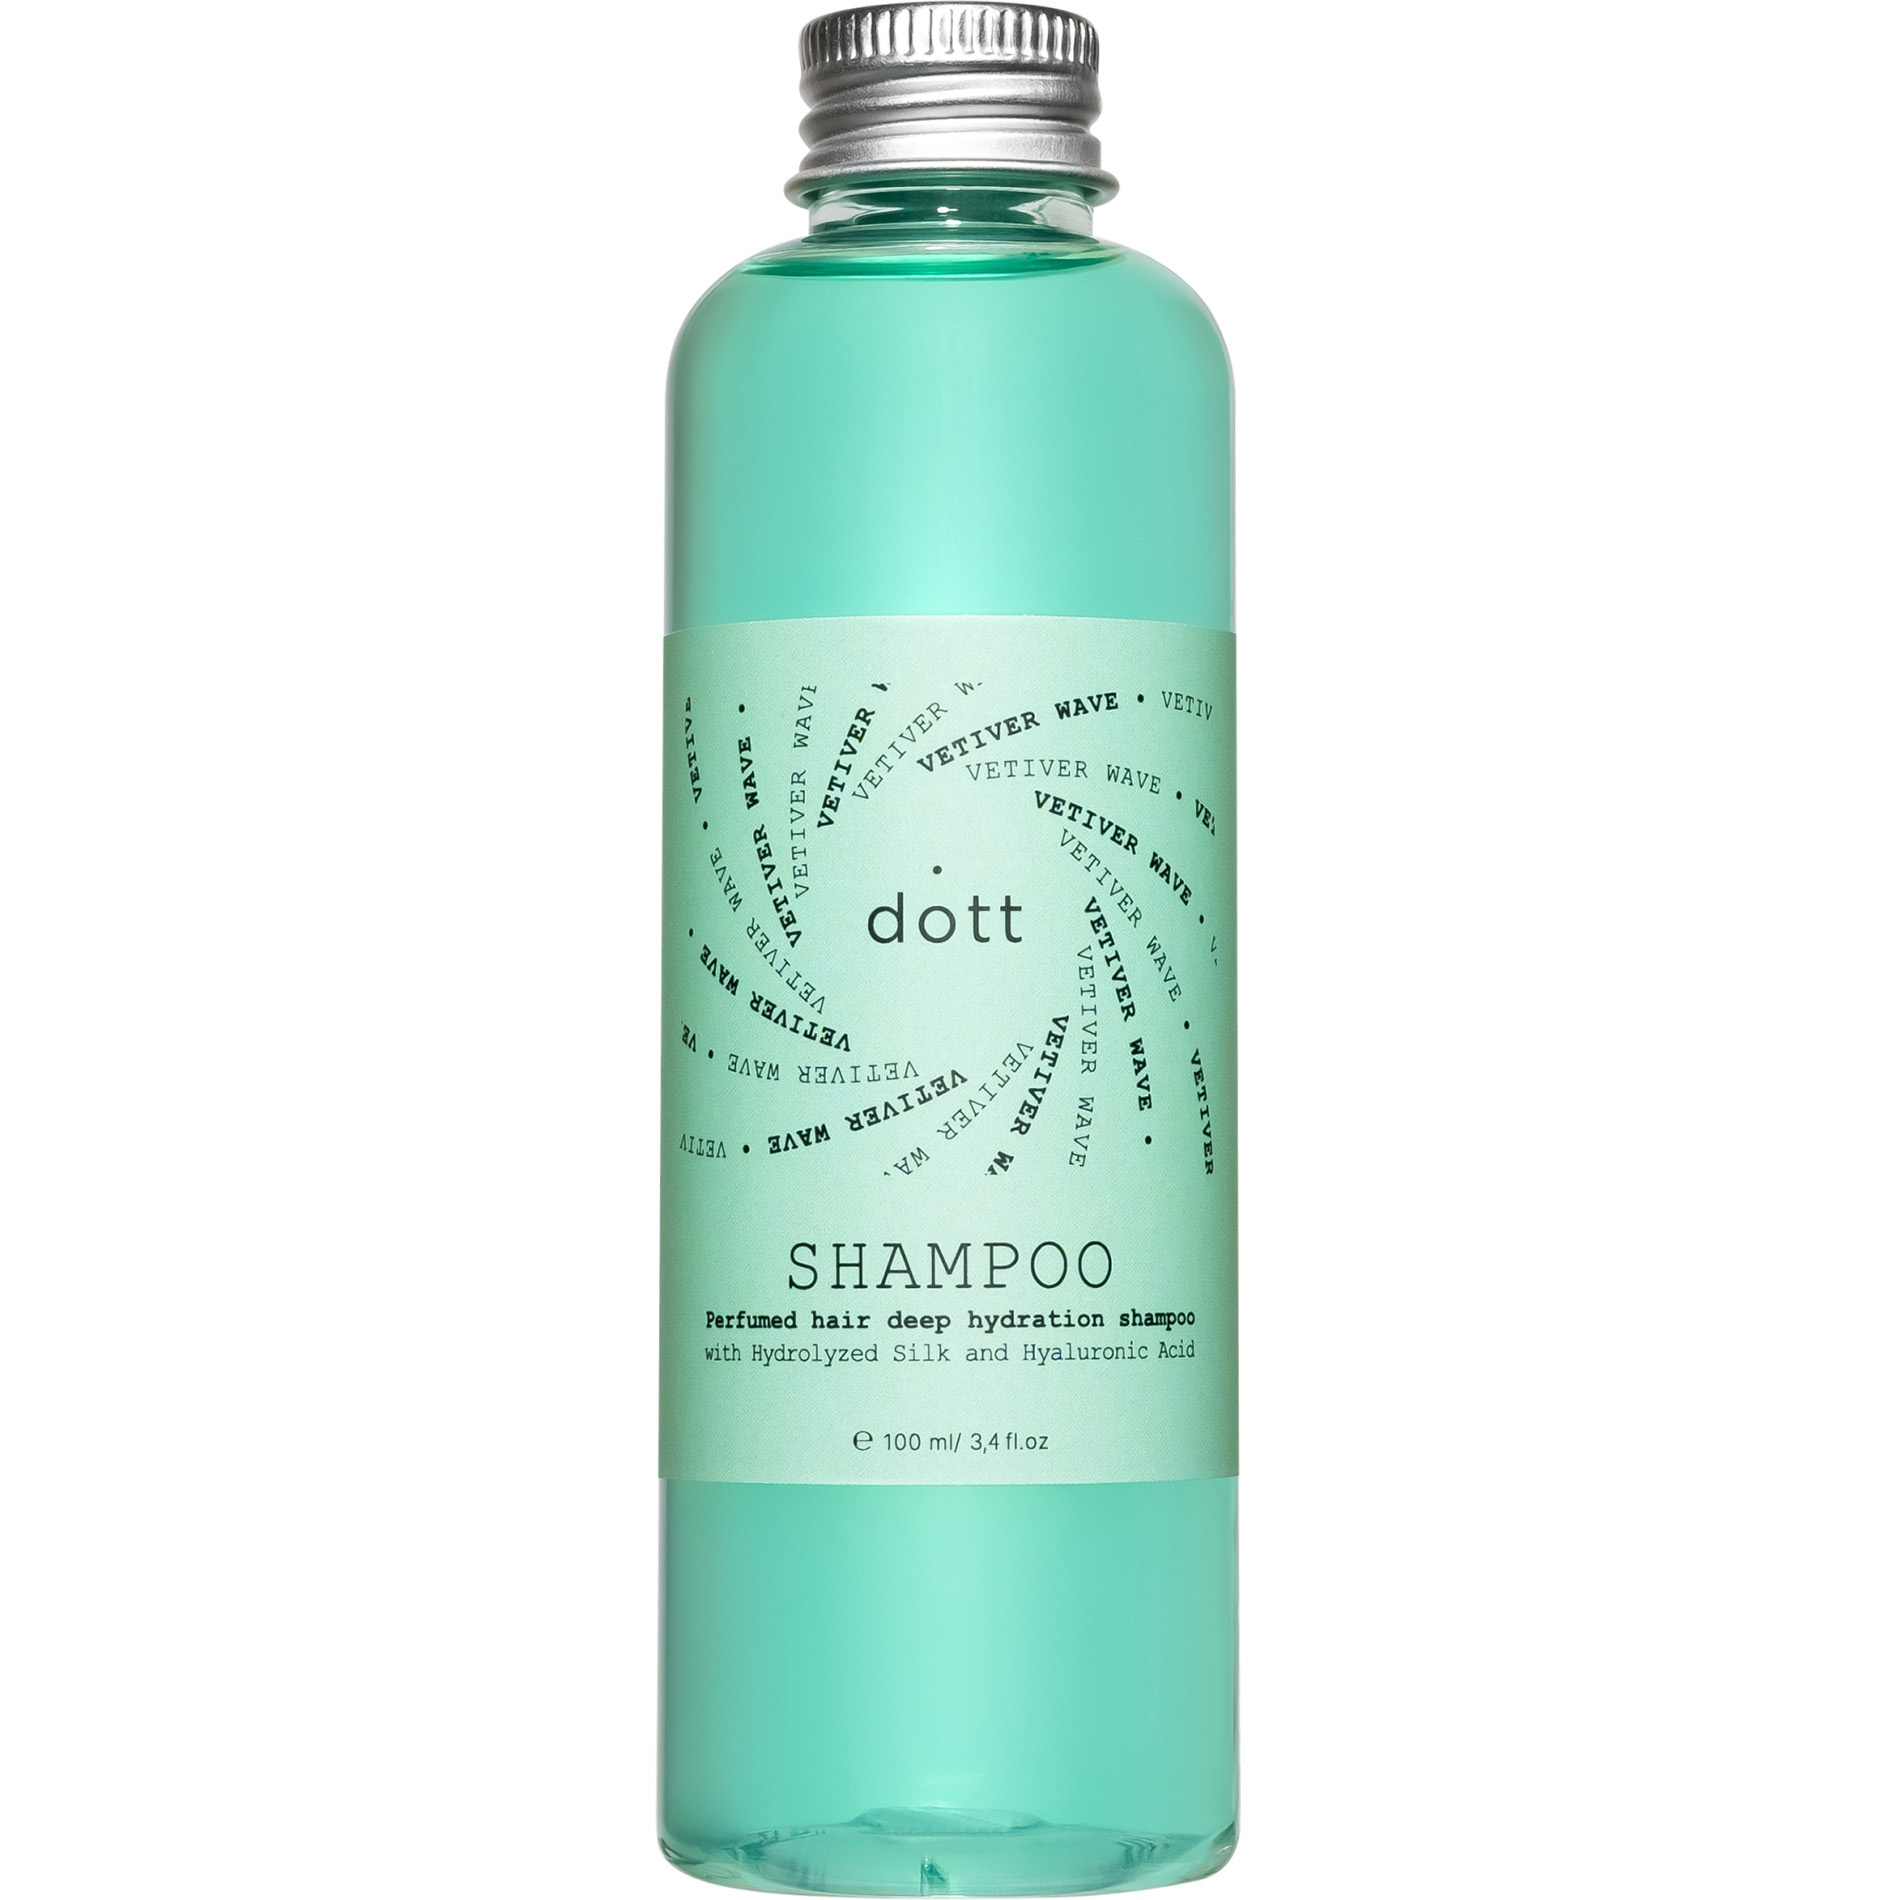 Парфюмированный шампунь Dott Sport Siz для глубокого увлажнения волос с гидролизованным шелком и гиалуроновой кислотой 100 мл - фото 1